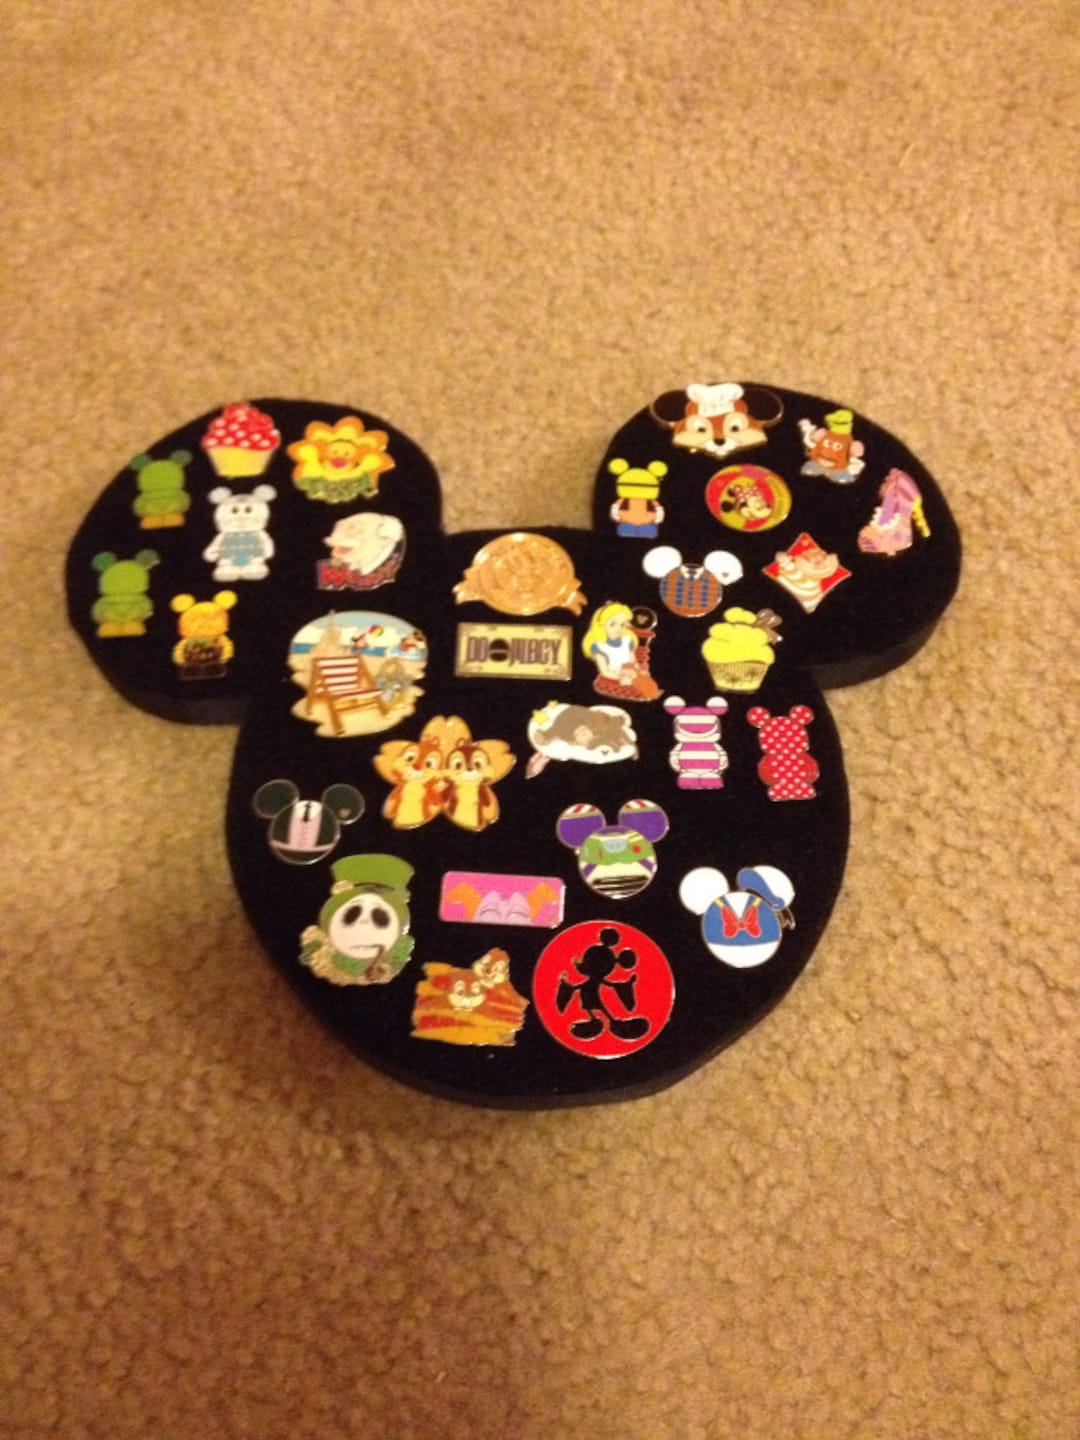 New Mickey Mouse Pin Trading Messenger Bag at Disney Parks - Disney Pins  Blog